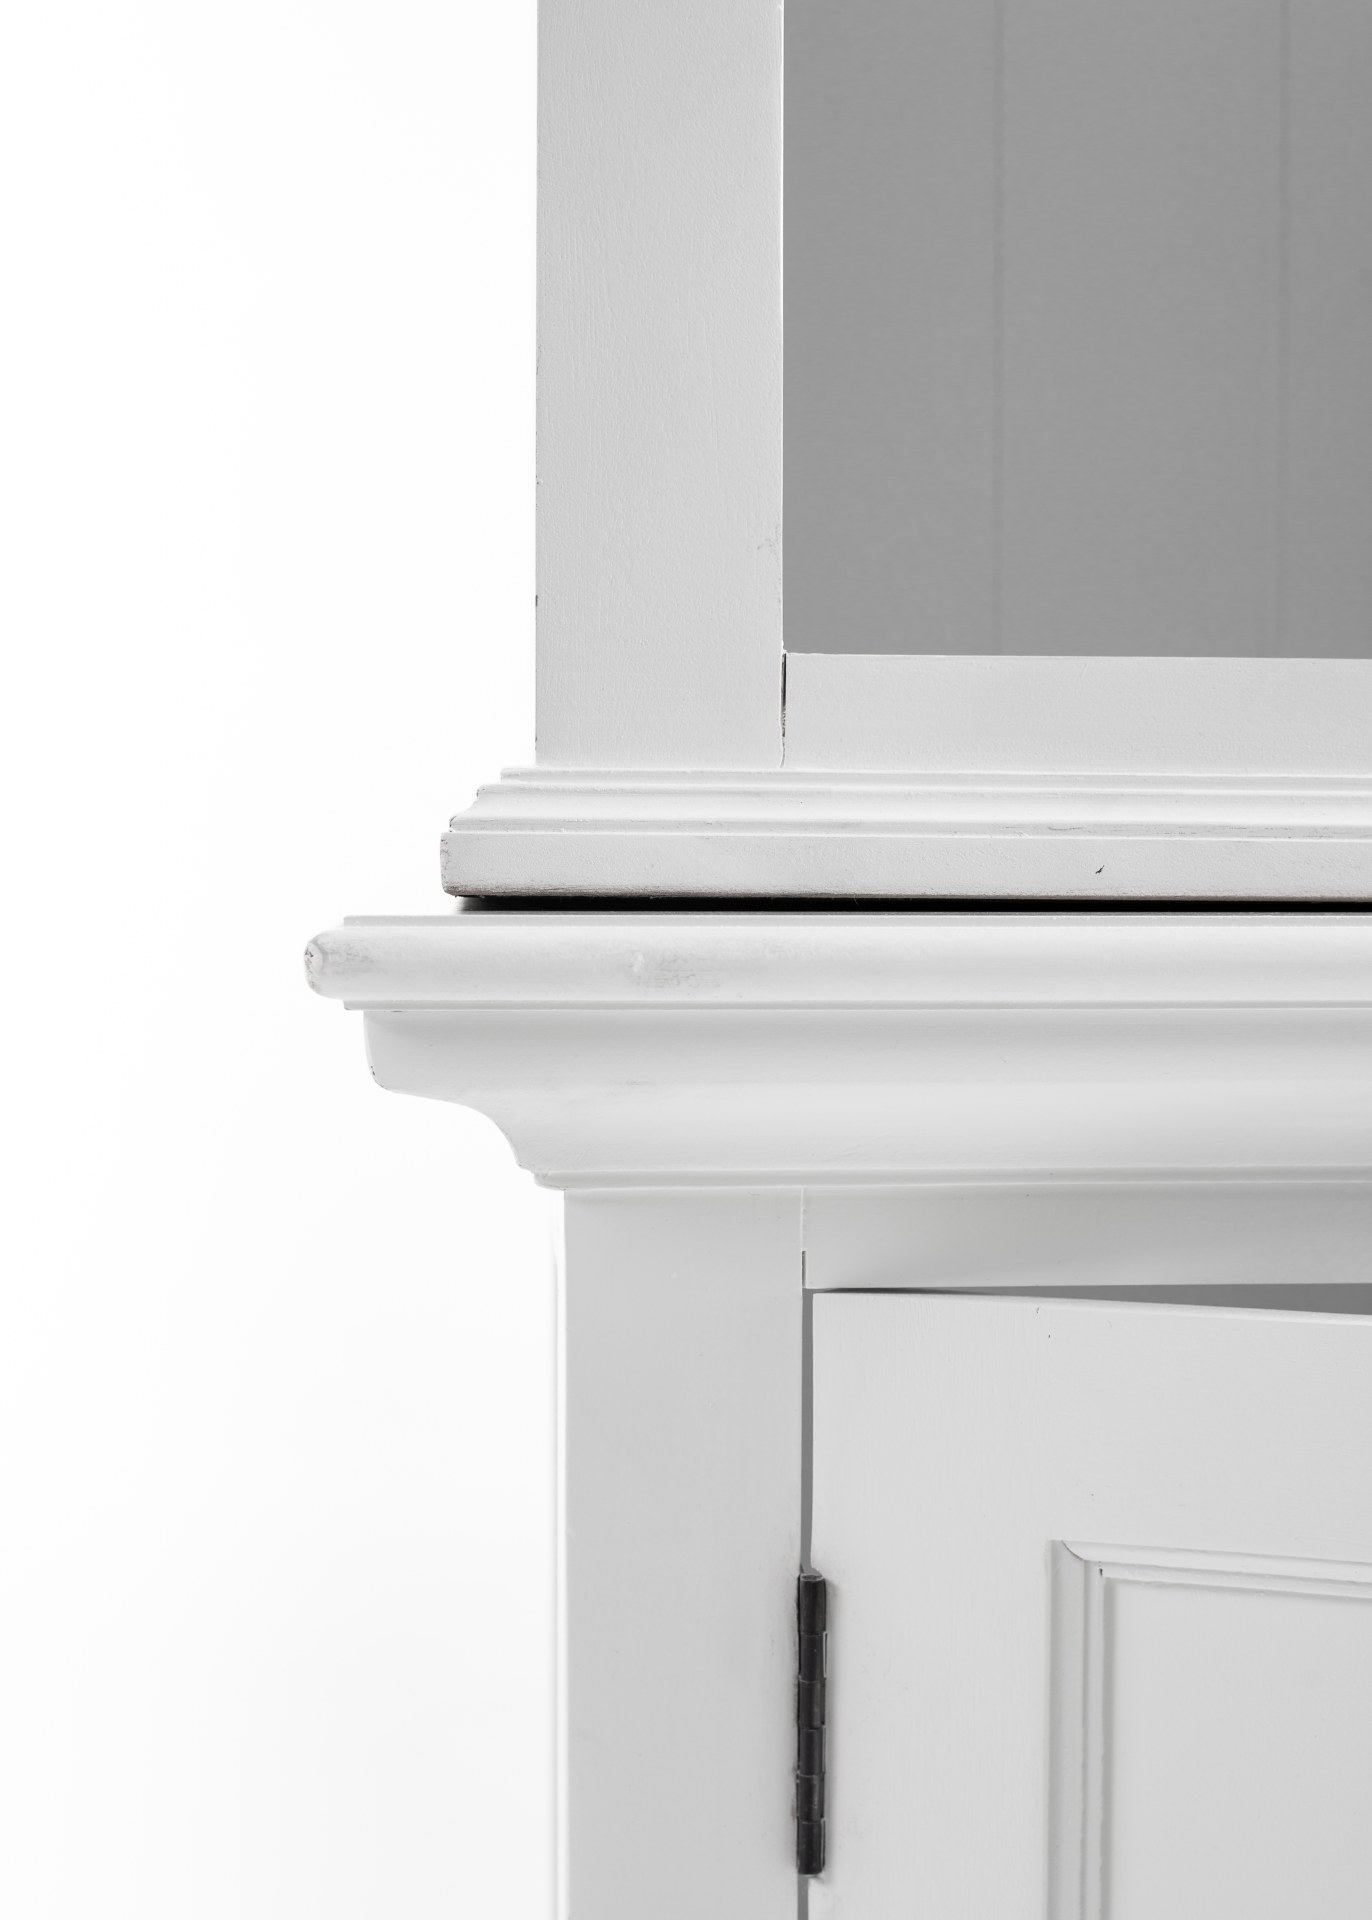 Das Regal Halifax überzeugt mit seinem Landhaus Stil. Gefertigt wurde es aus Mahagoni Holz, welches einen weißen Farbton besitzt. Das Regal verfügt über zwei Türen und fünf offene Fächer.